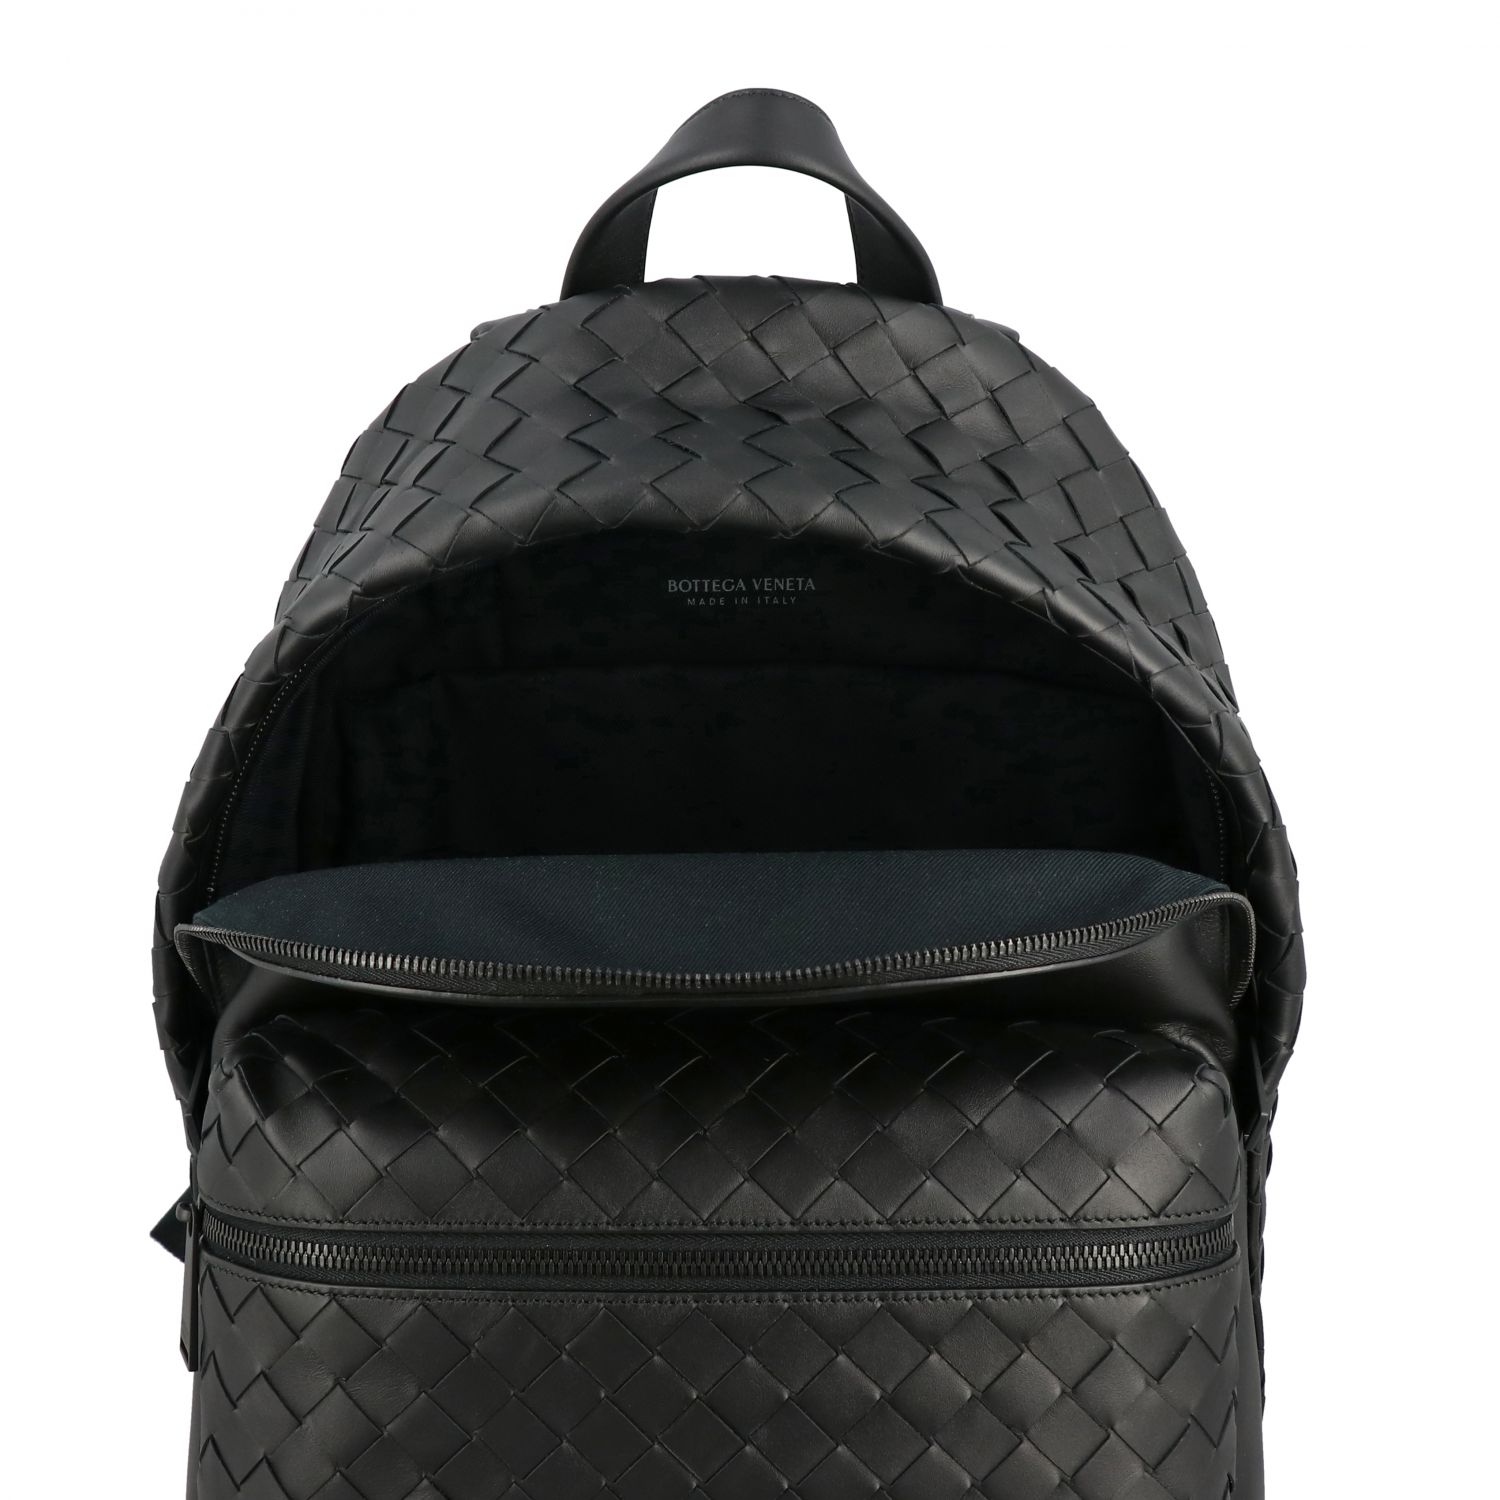 BOTTEGA VENETA: backpack in woven nappa leather - Black | Backpack ...